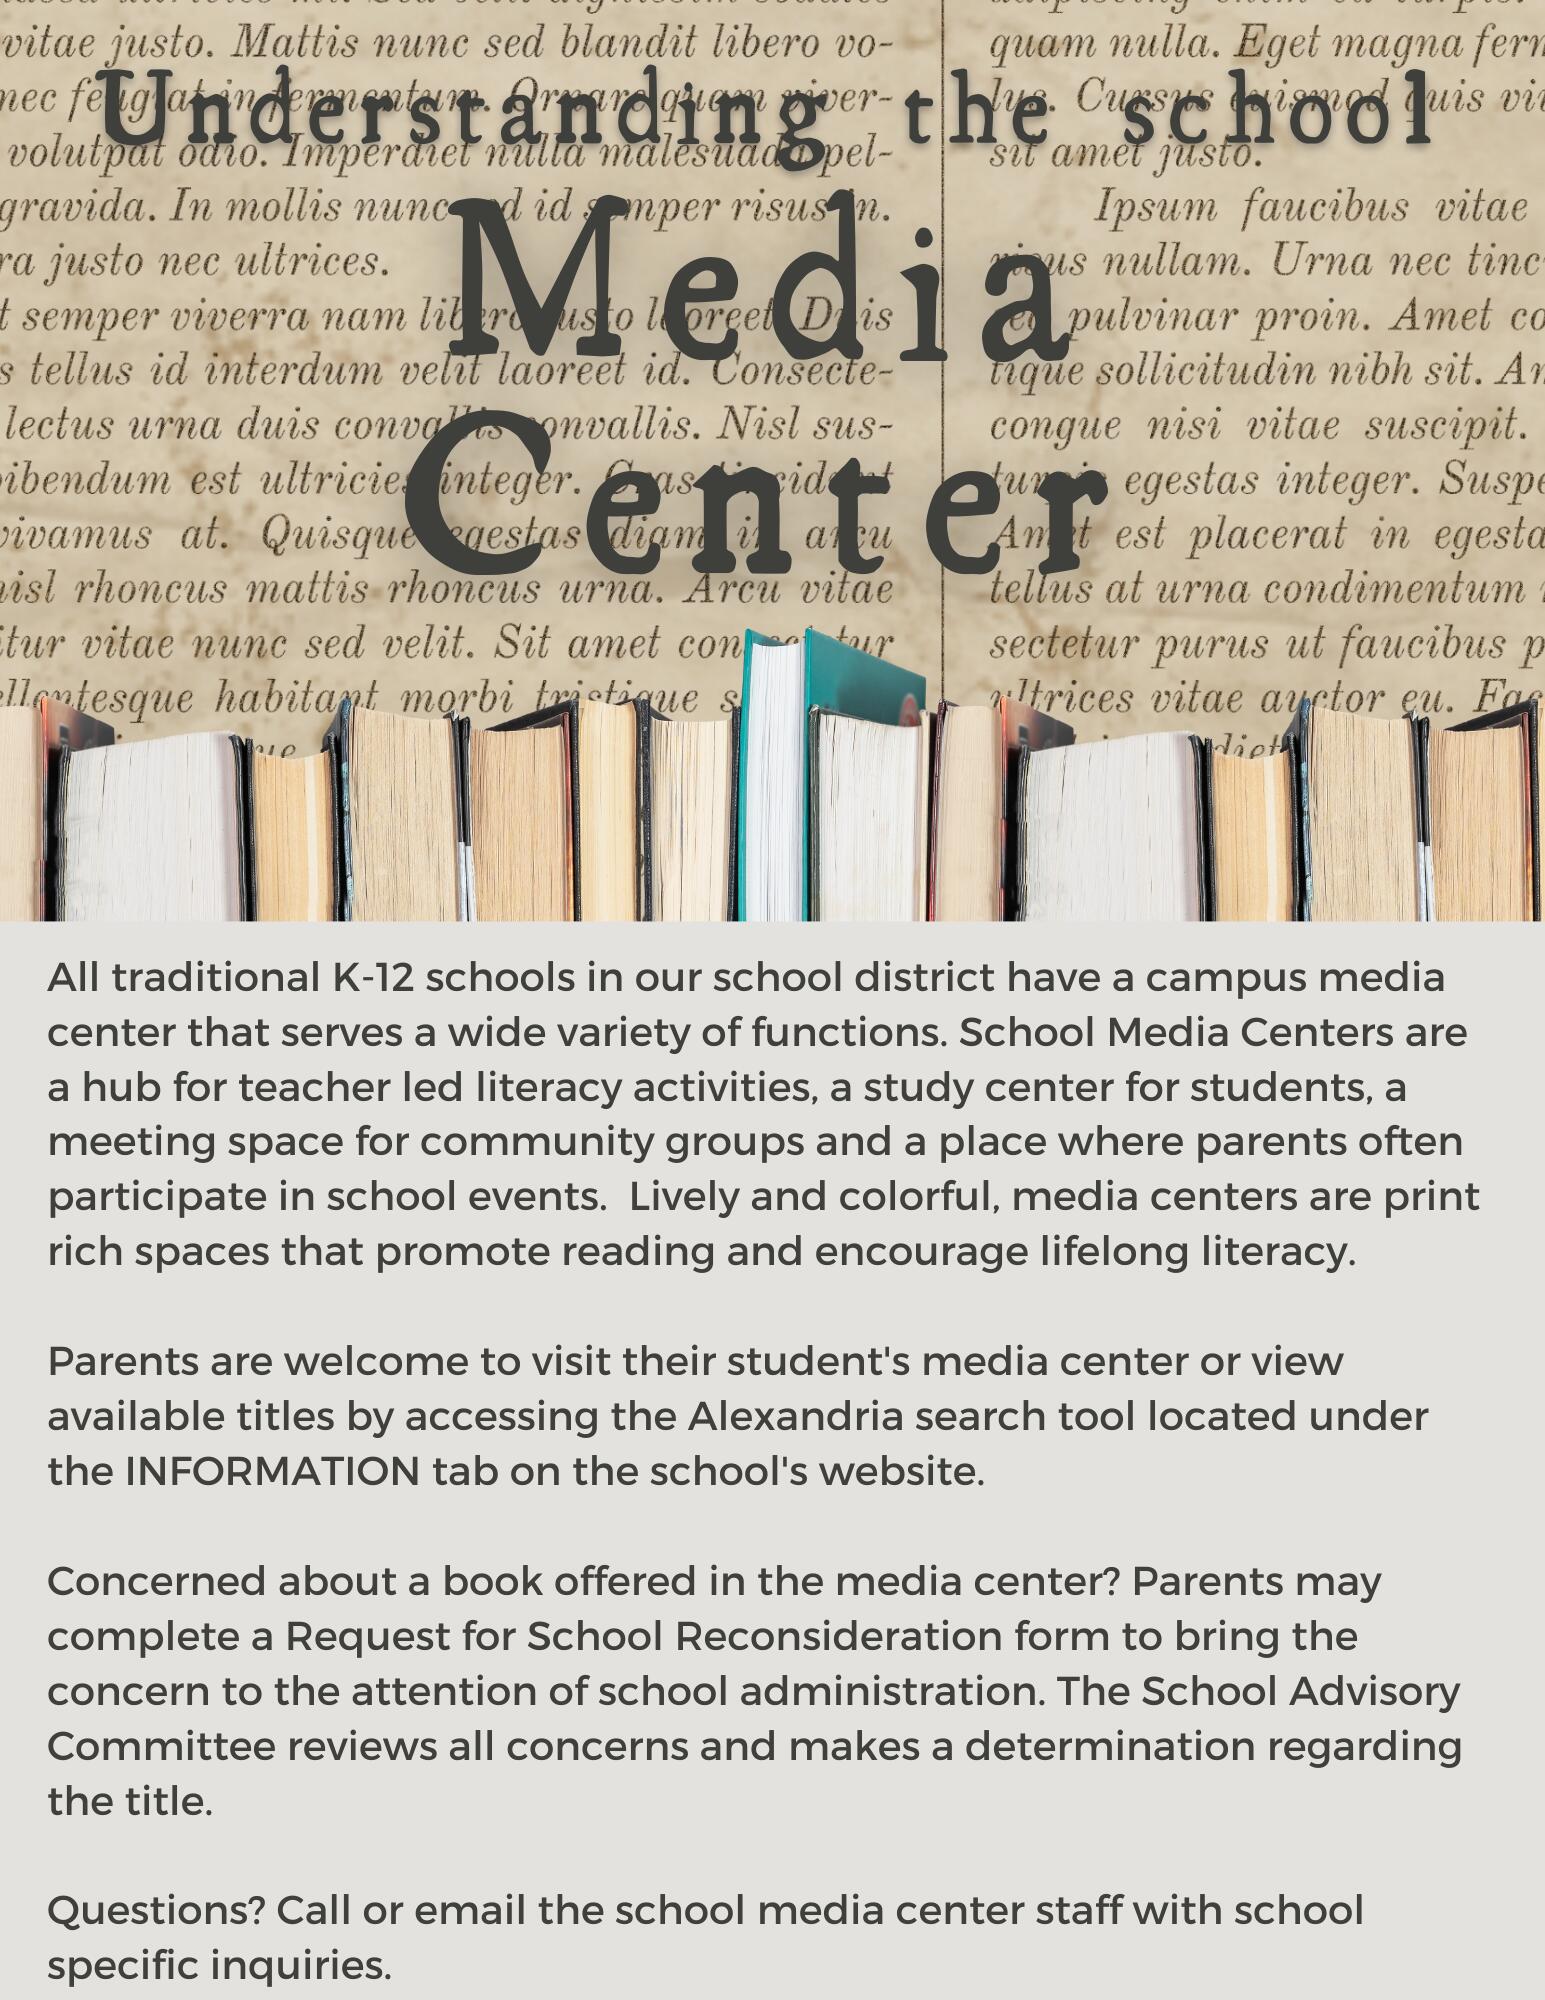 Understanding the School Media Center